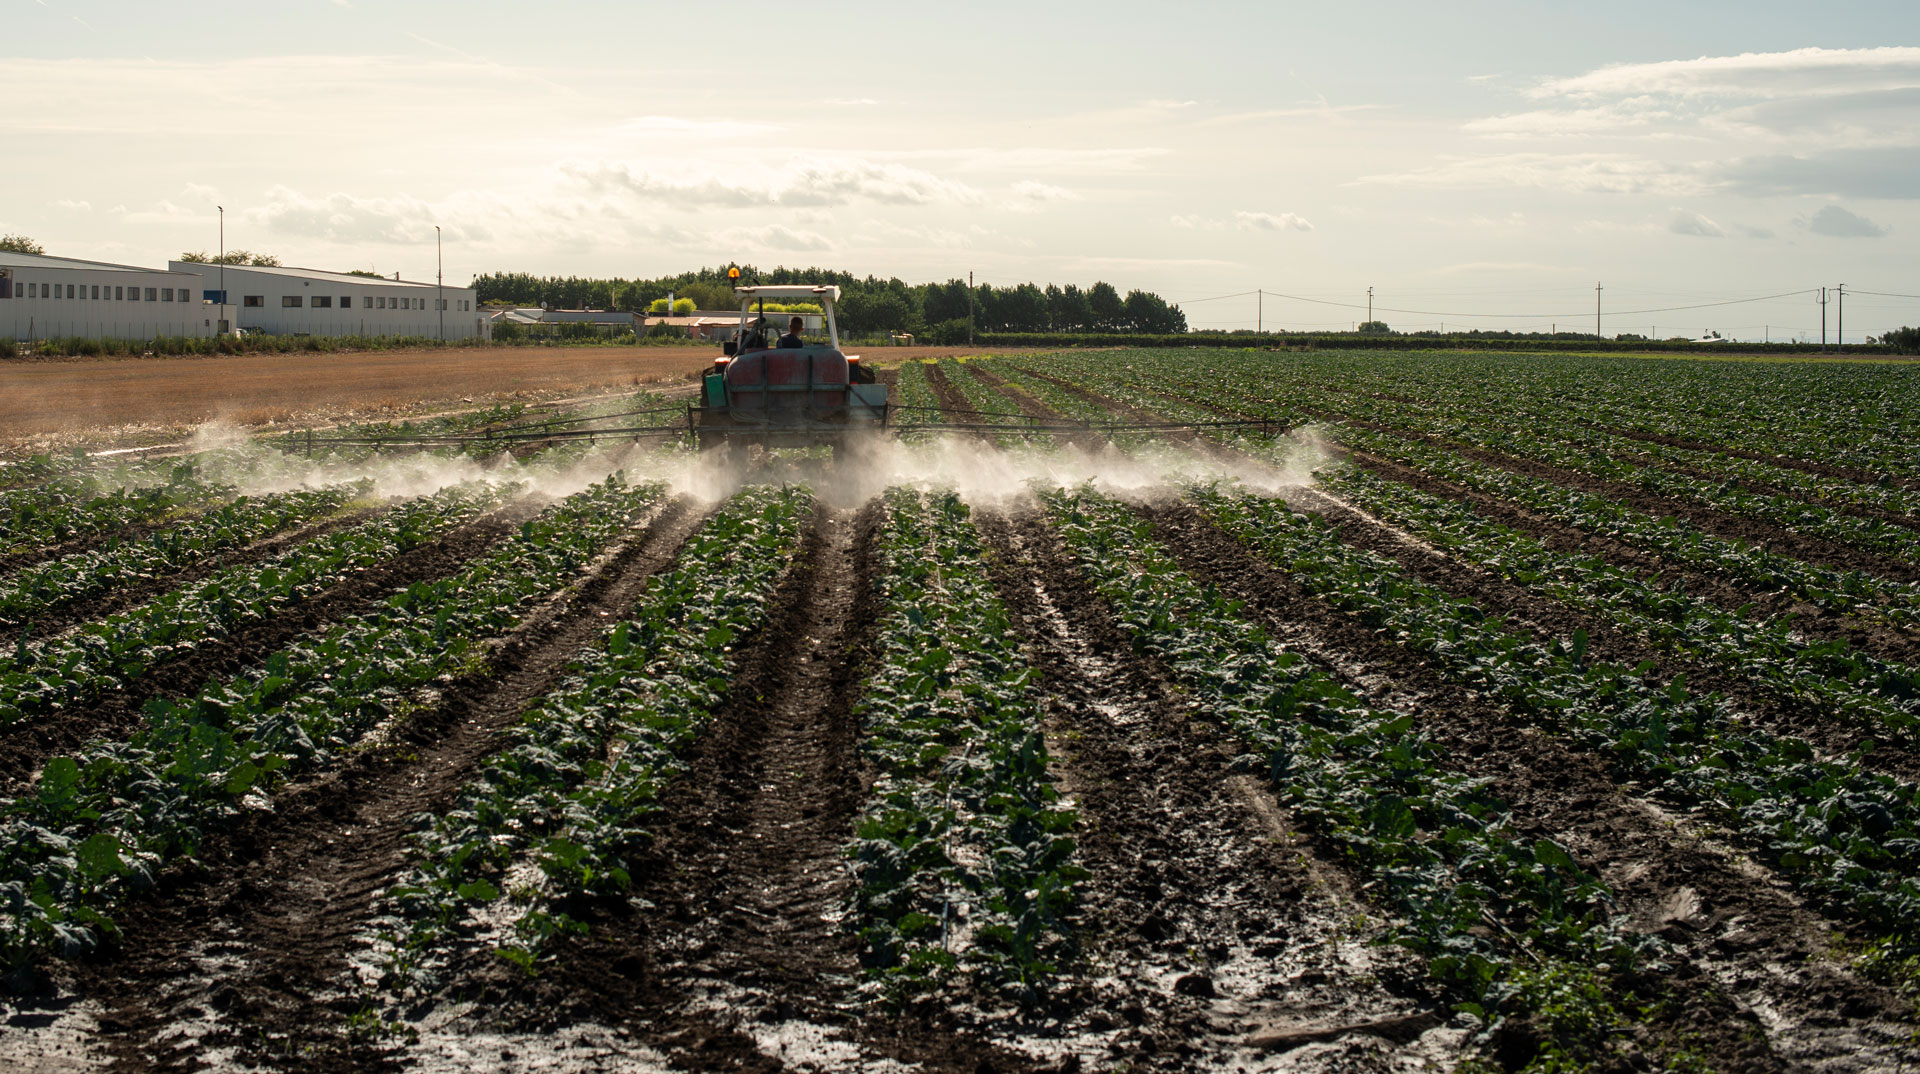 Un tracteur pulvérise des pesticides sur un champ ©deyangeorgiev, Envato elements